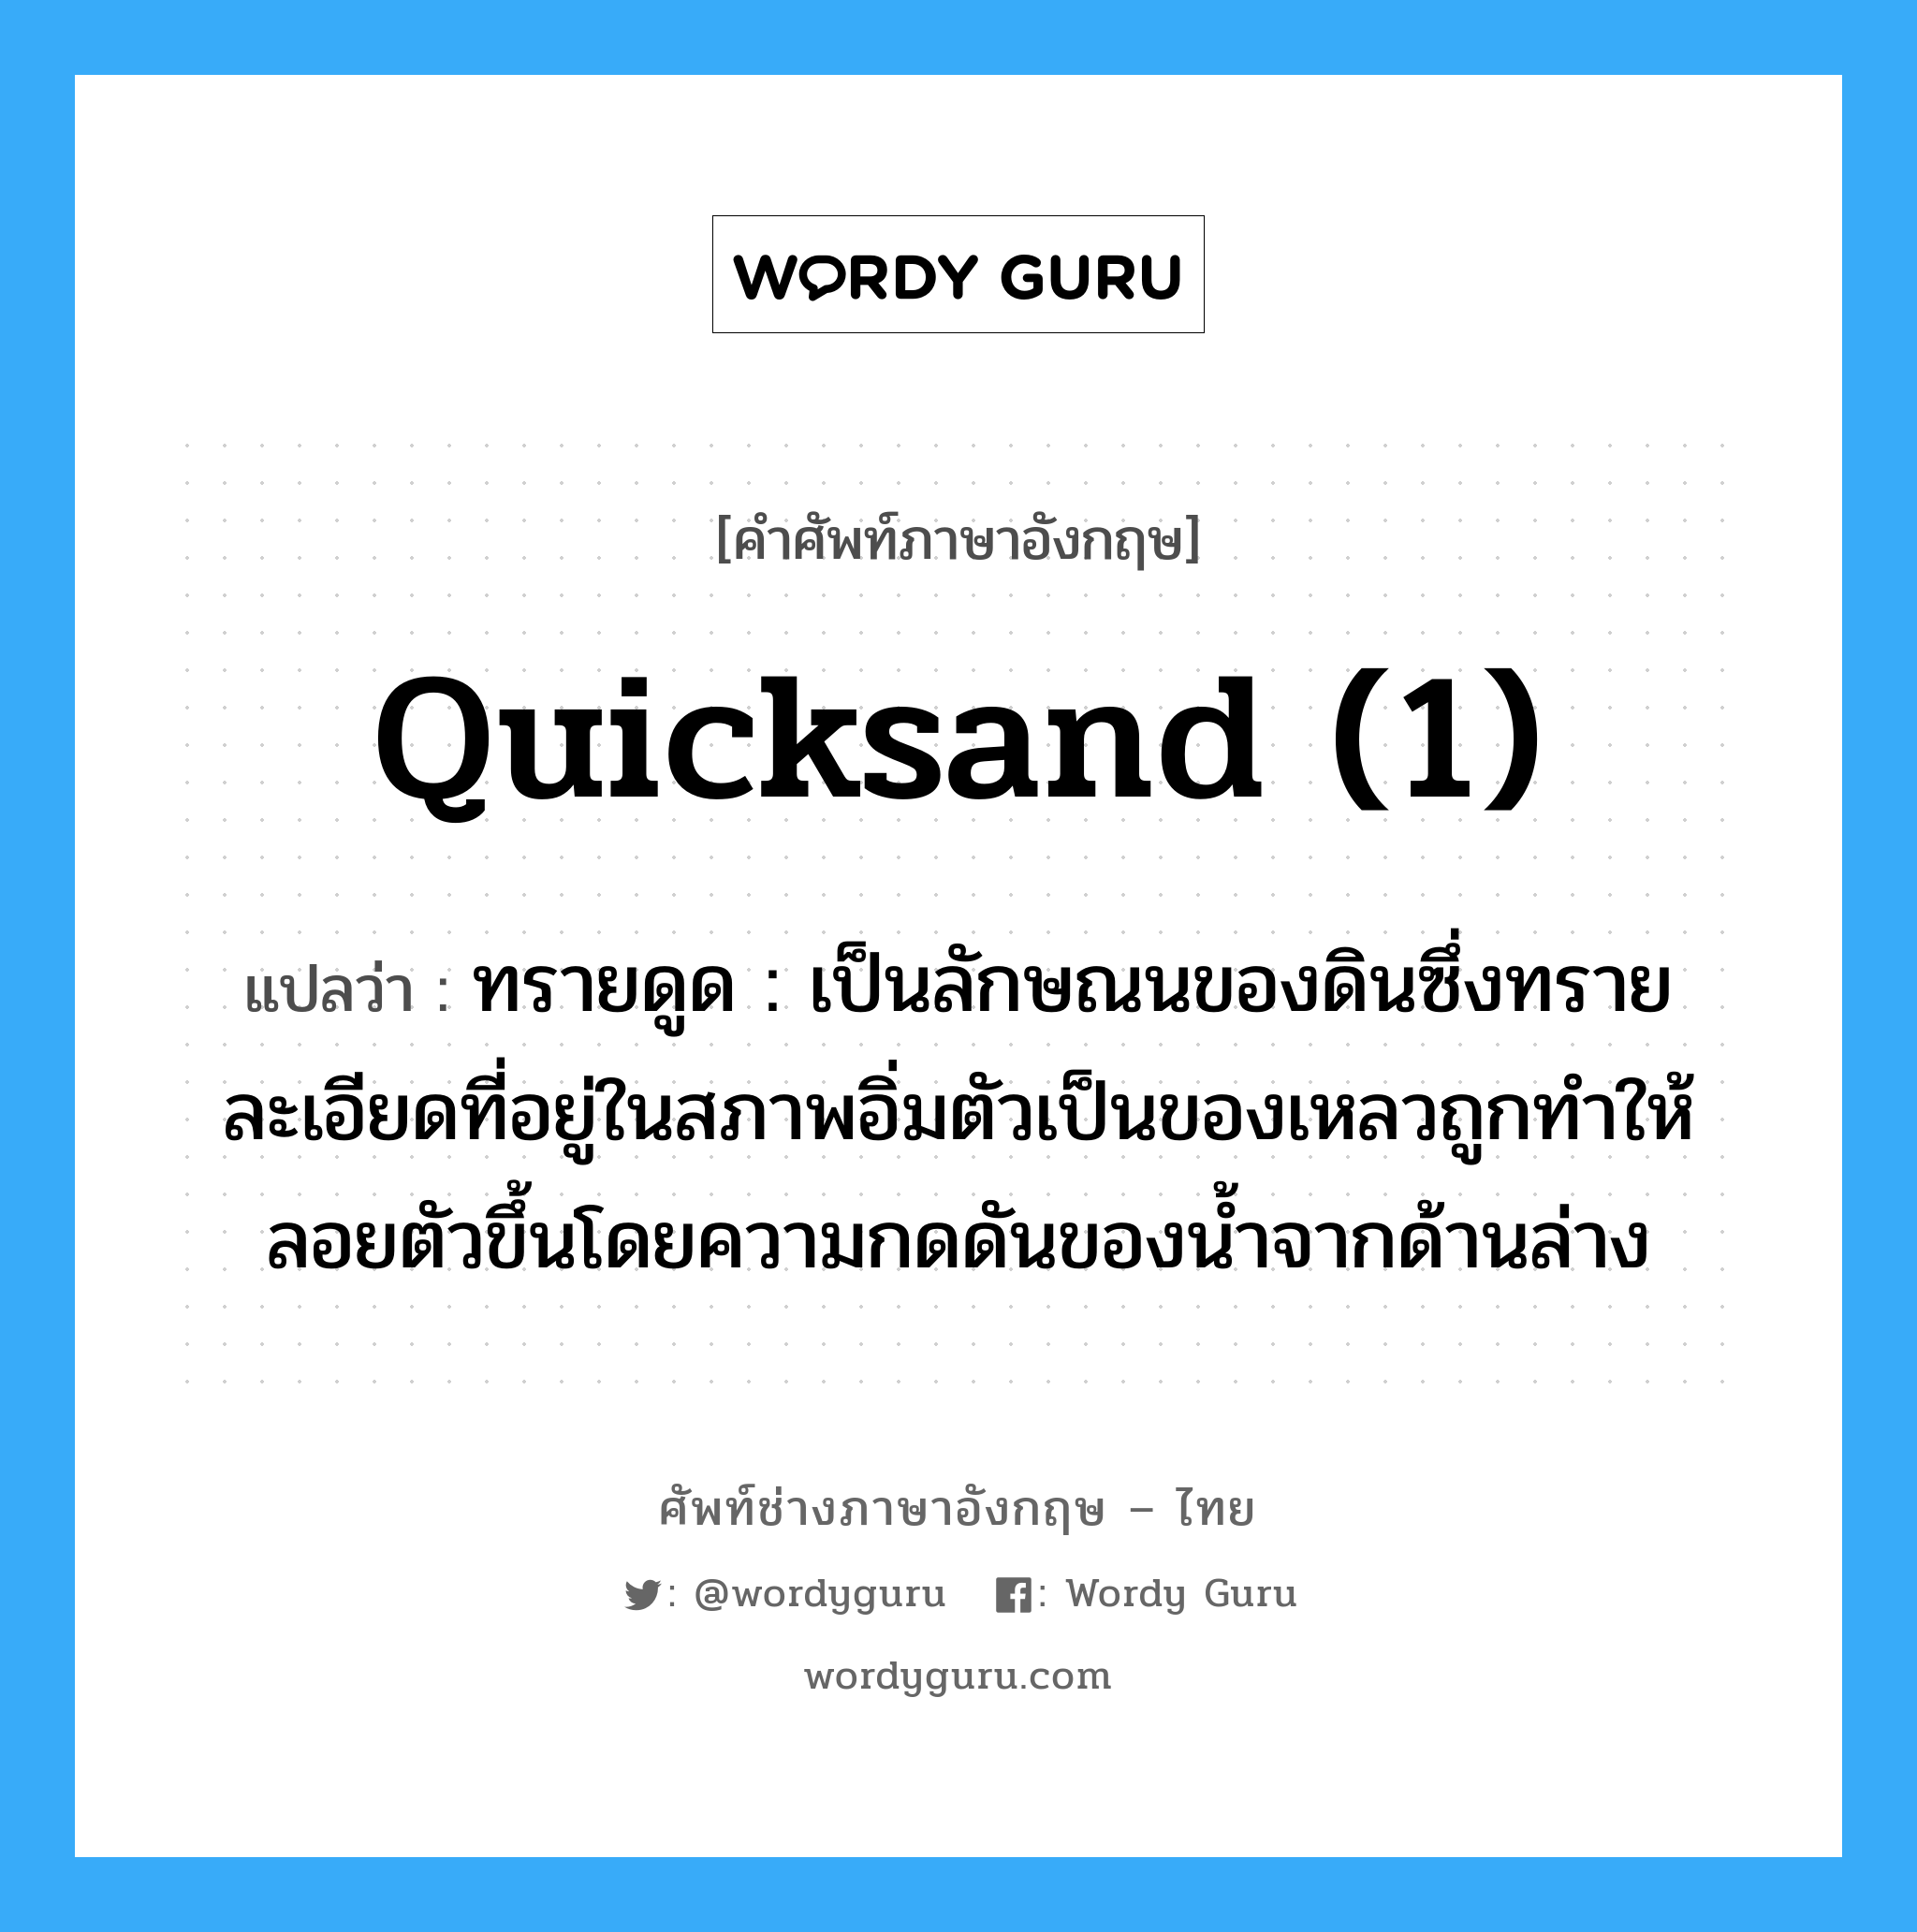 quicksand (1) แปลว่า?, คำศัพท์ช่างภาษาอังกฤษ - ไทย quicksand (1) คำศัพท์ภาษาอังกฤษ quicksand (1) แปลว่า ทรายดูด : เป็นลักษณนของดินซึ่งทรายละเอียดที่อยู่ในสภาพอิ่มตัวเป็นของเหลวถูกทำให้ลอยตัวขึ้นโดยความกดดันของน้ำจากด้านล่าง